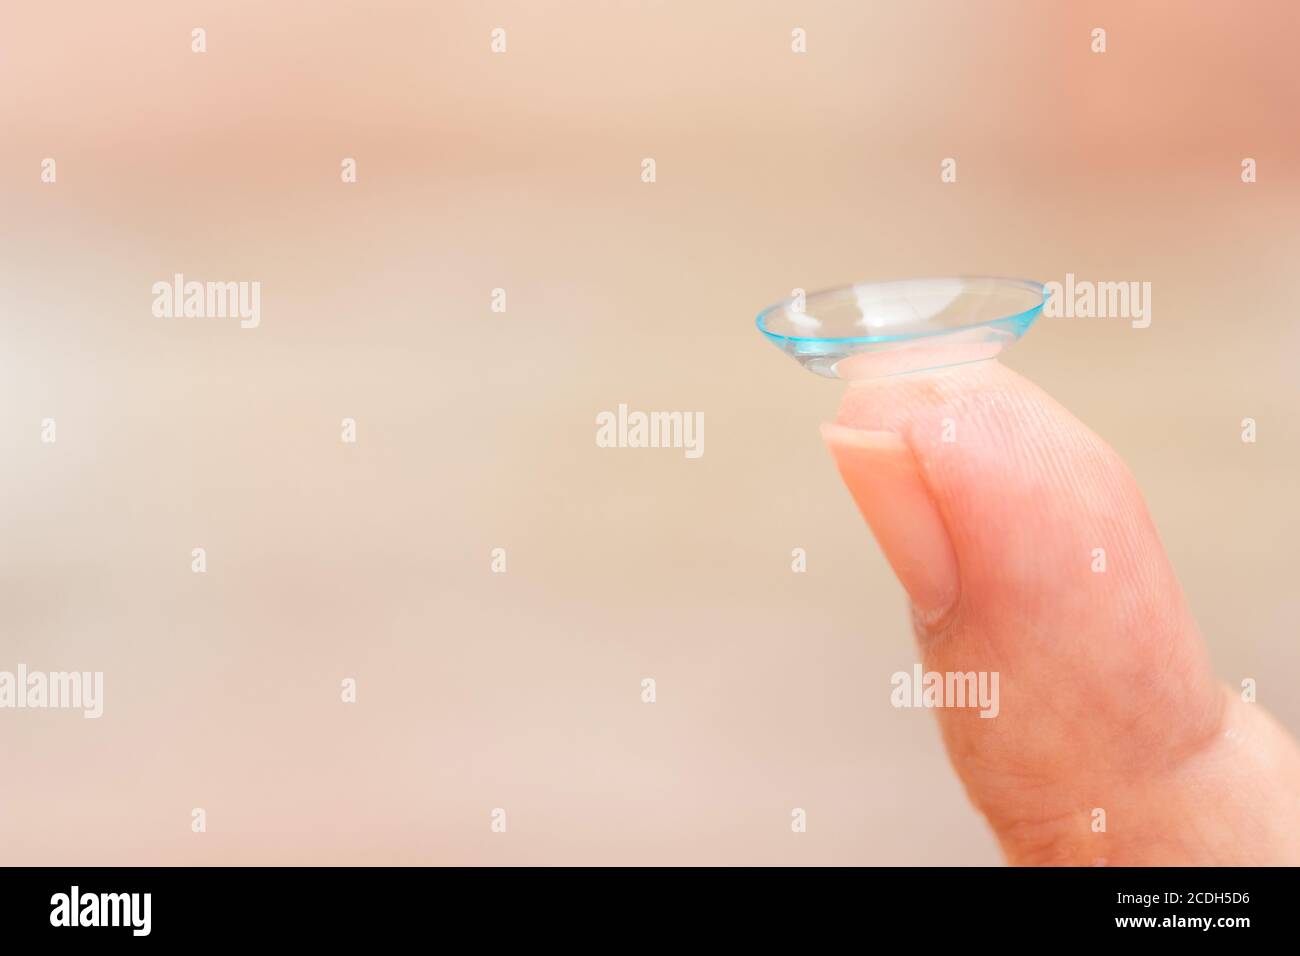 Nahaufnahme des weiblichen Fingers mit Kontaktlinse. Kontaktlinsen am Finger. Stockfoto